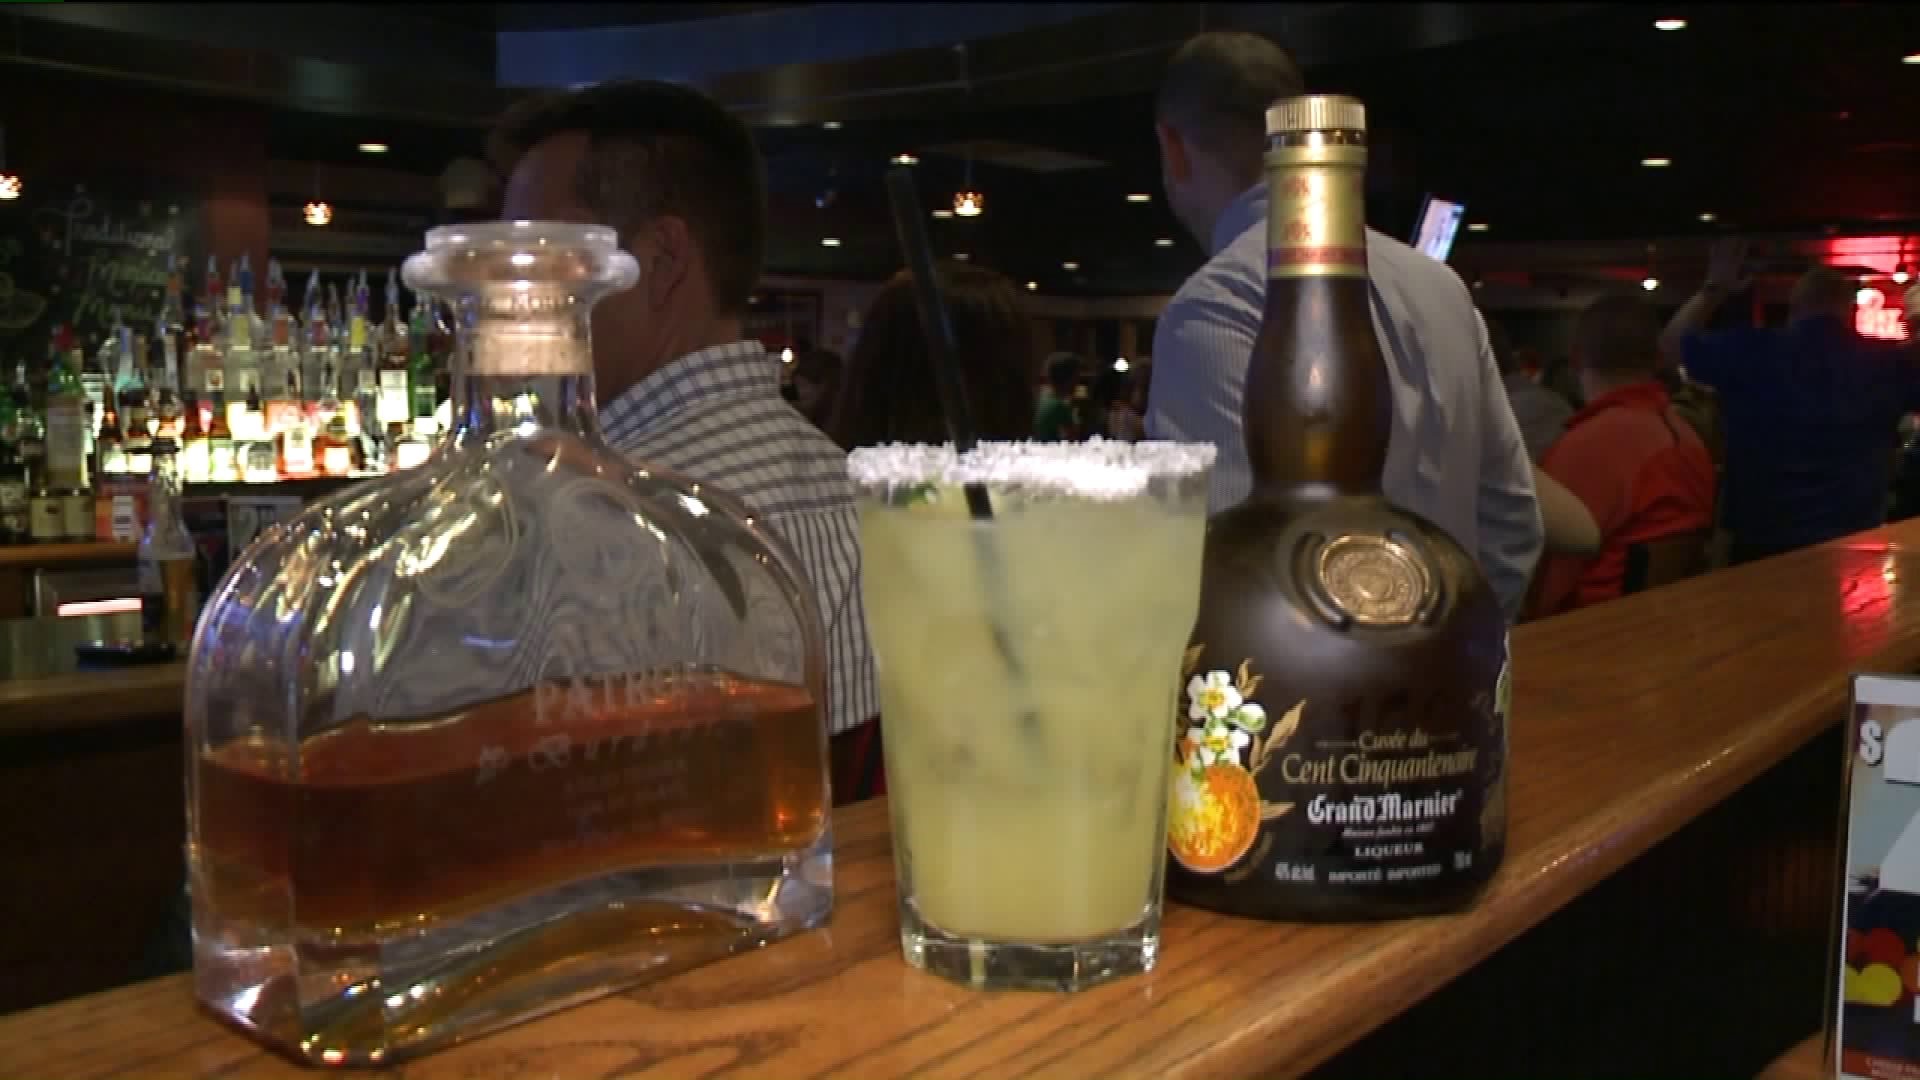 Local Bar Celebrates Cinco de Mayo with Specialty Drink